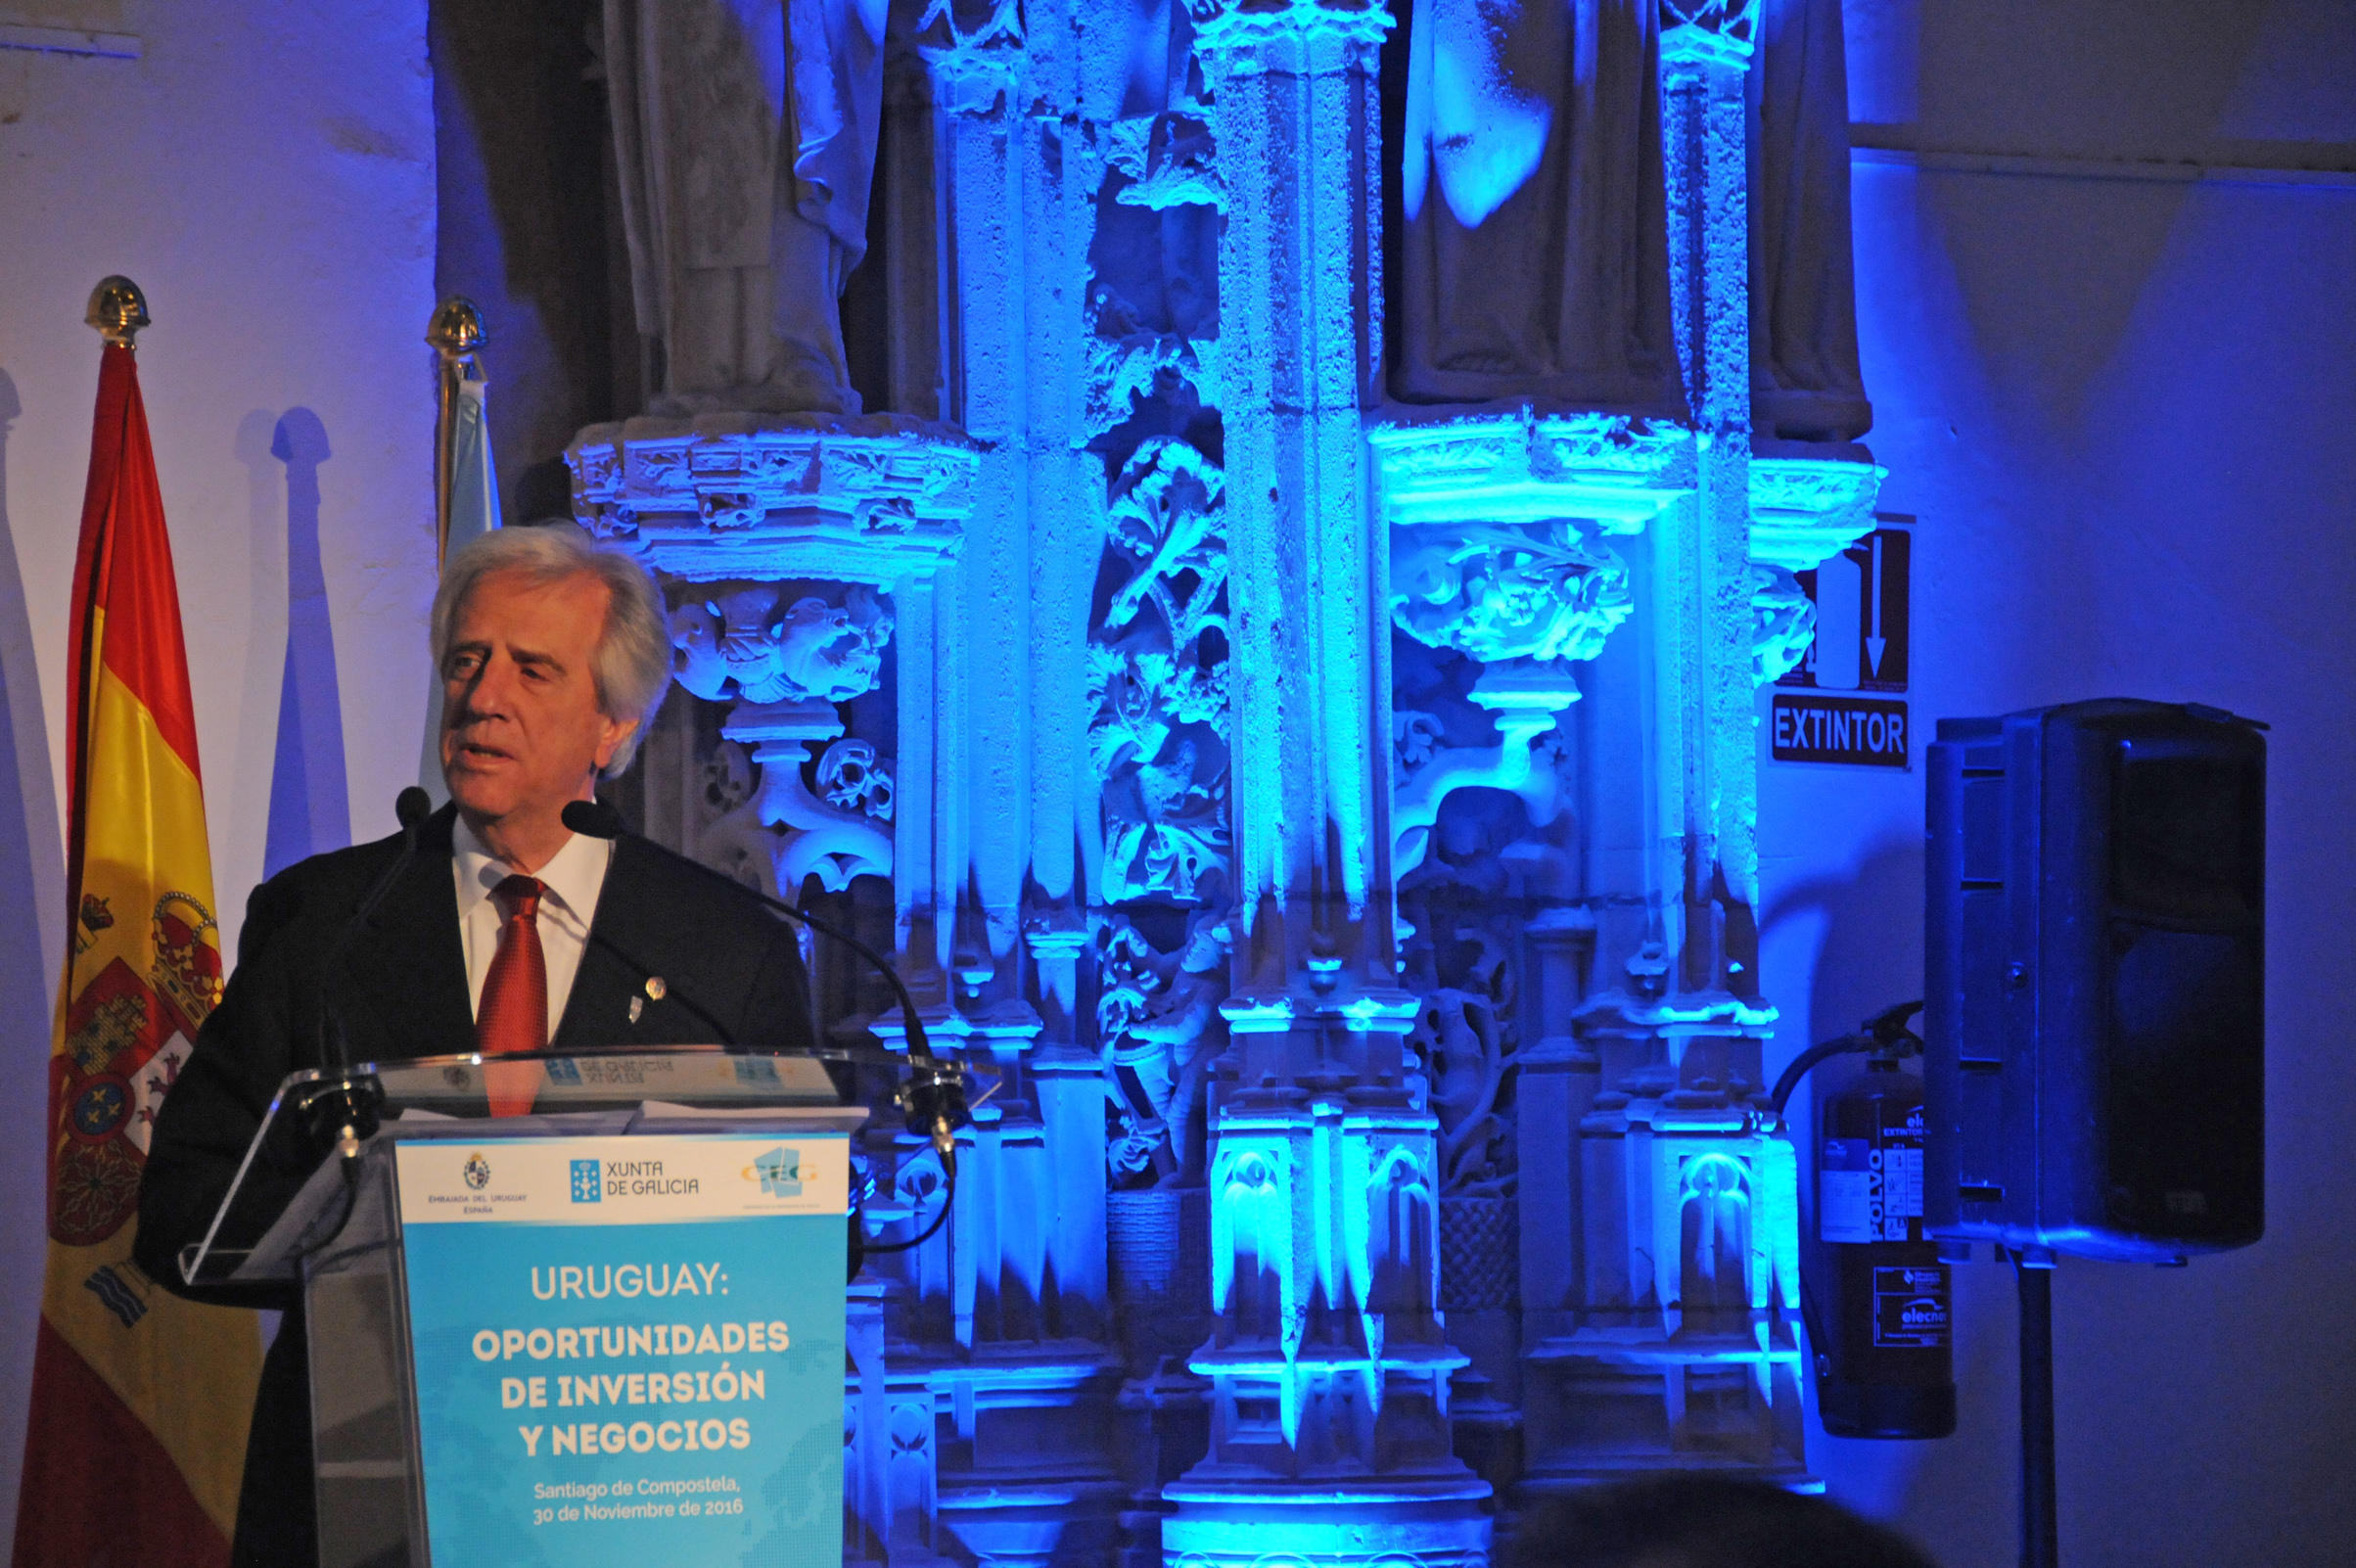 Uruguay Präsident Vazquez stellte im Spanischen Galizien vor Unternehmern die Infrastrukturprojekte seiner Regierung vor